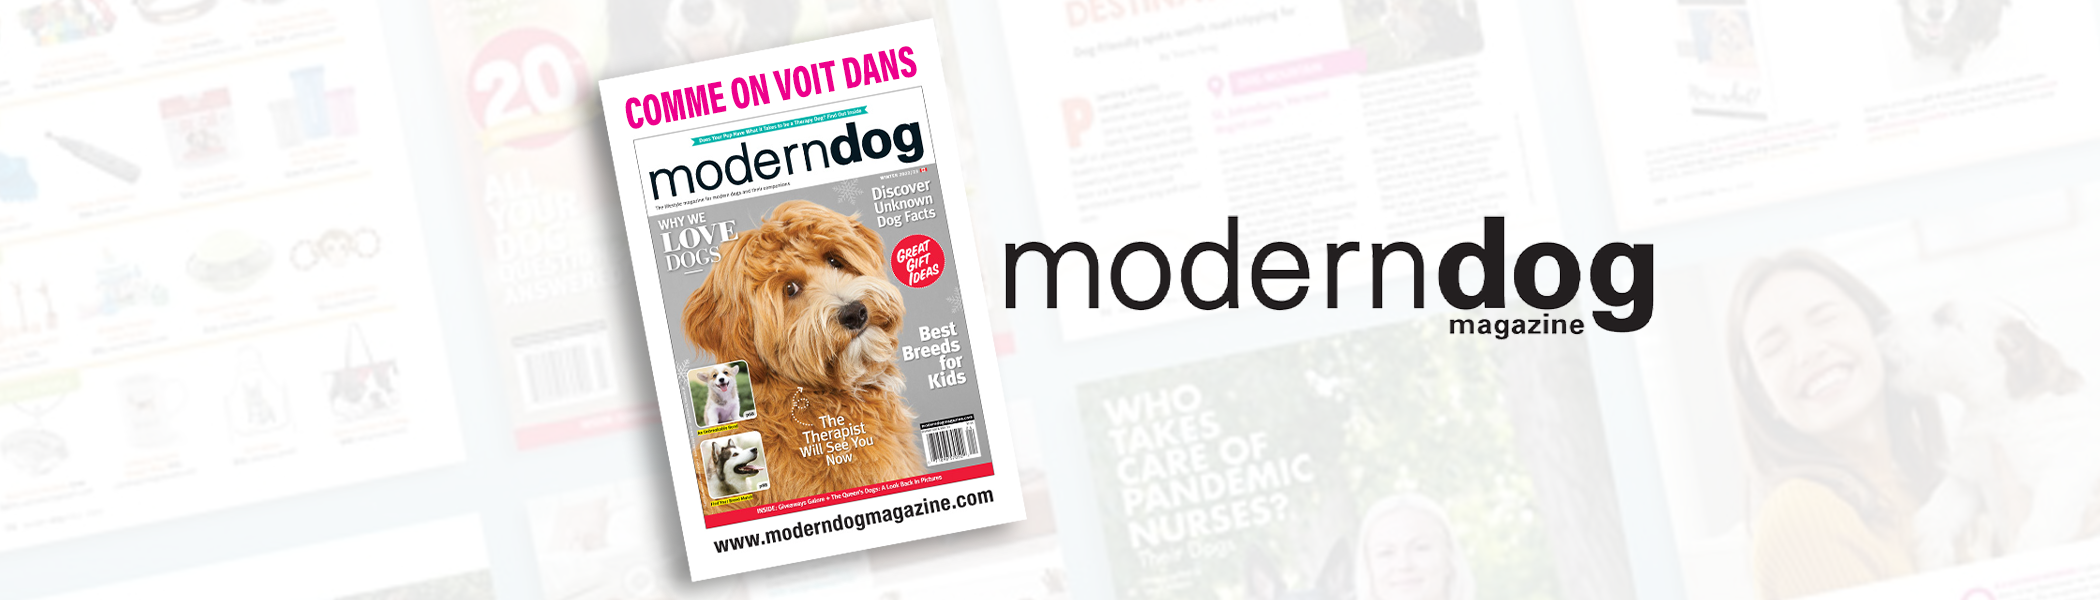 harlow-blend-homepage-slider-moderndog-fr